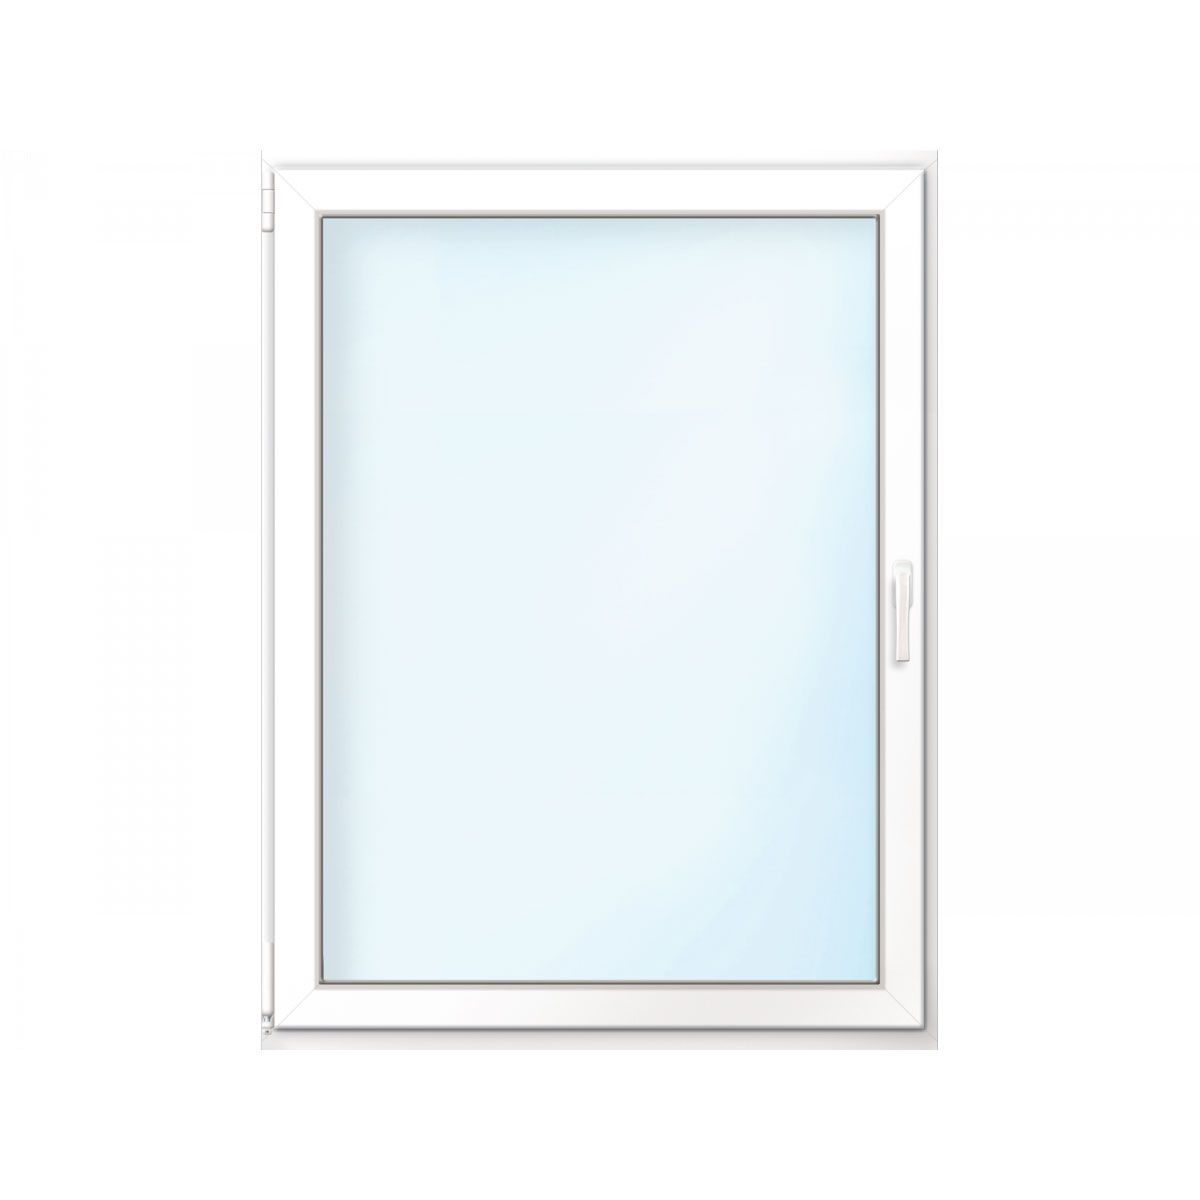 Wärmeschutz-Fenster „76/3“, 90x120 cm, weiß, Anschlag links